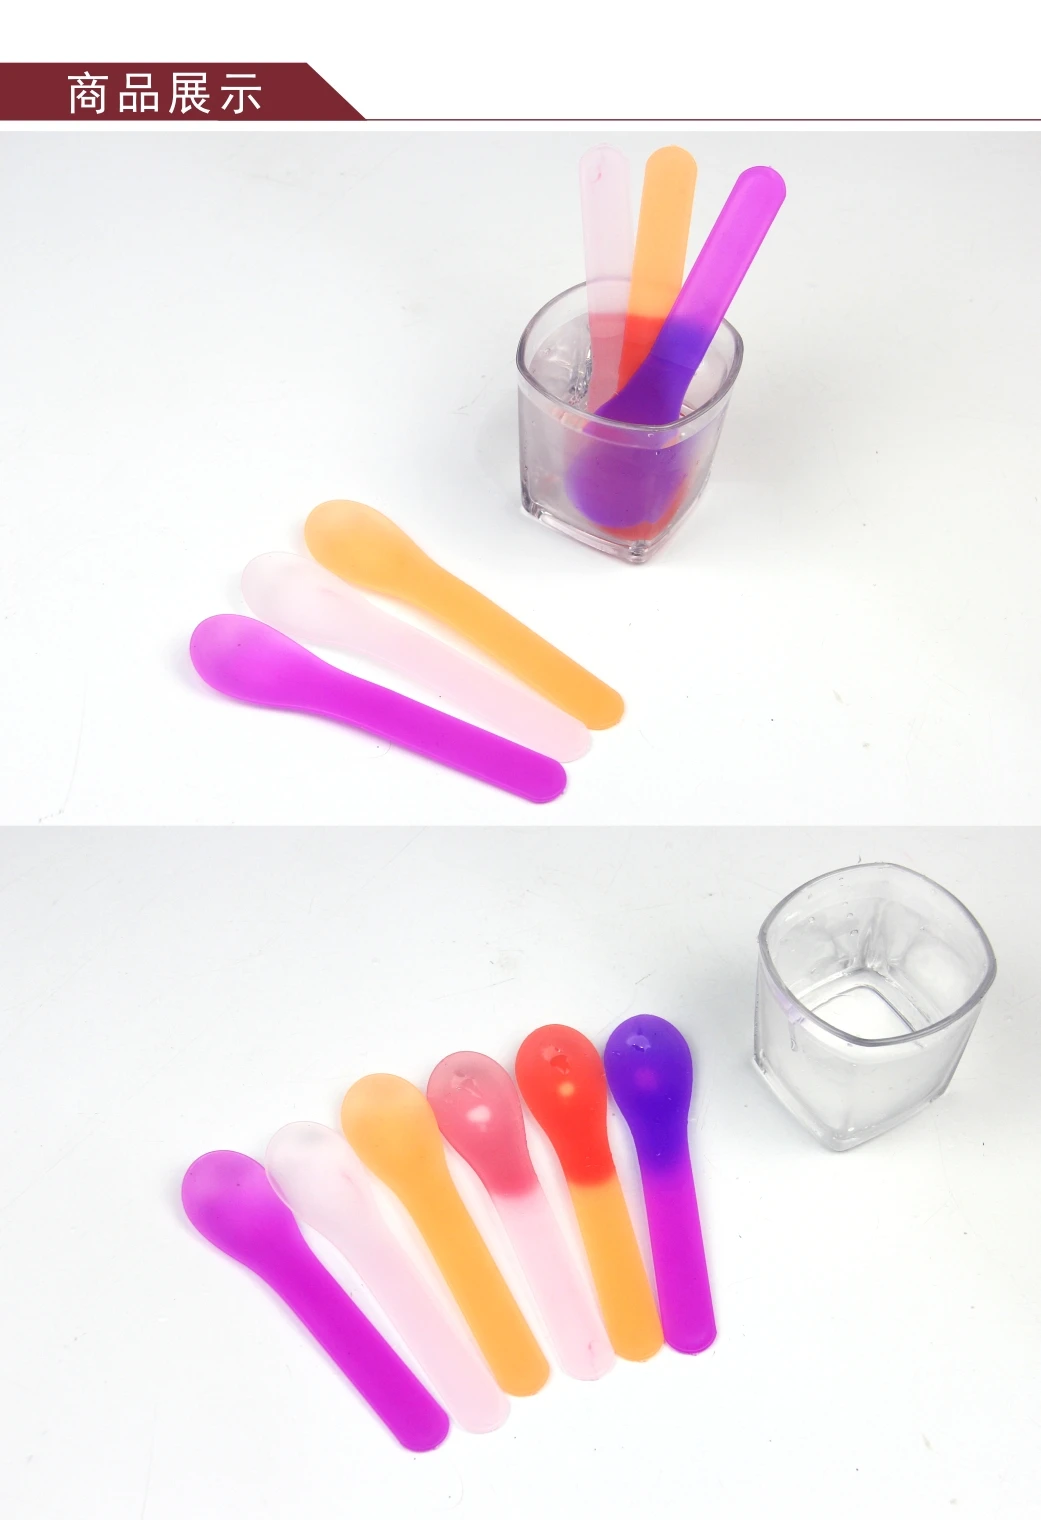 Пластиковая круглая головка для изменения температуры цвета мороженного ложка для холодного напитка одноразовая Ecofriendly Прямая с фабрики